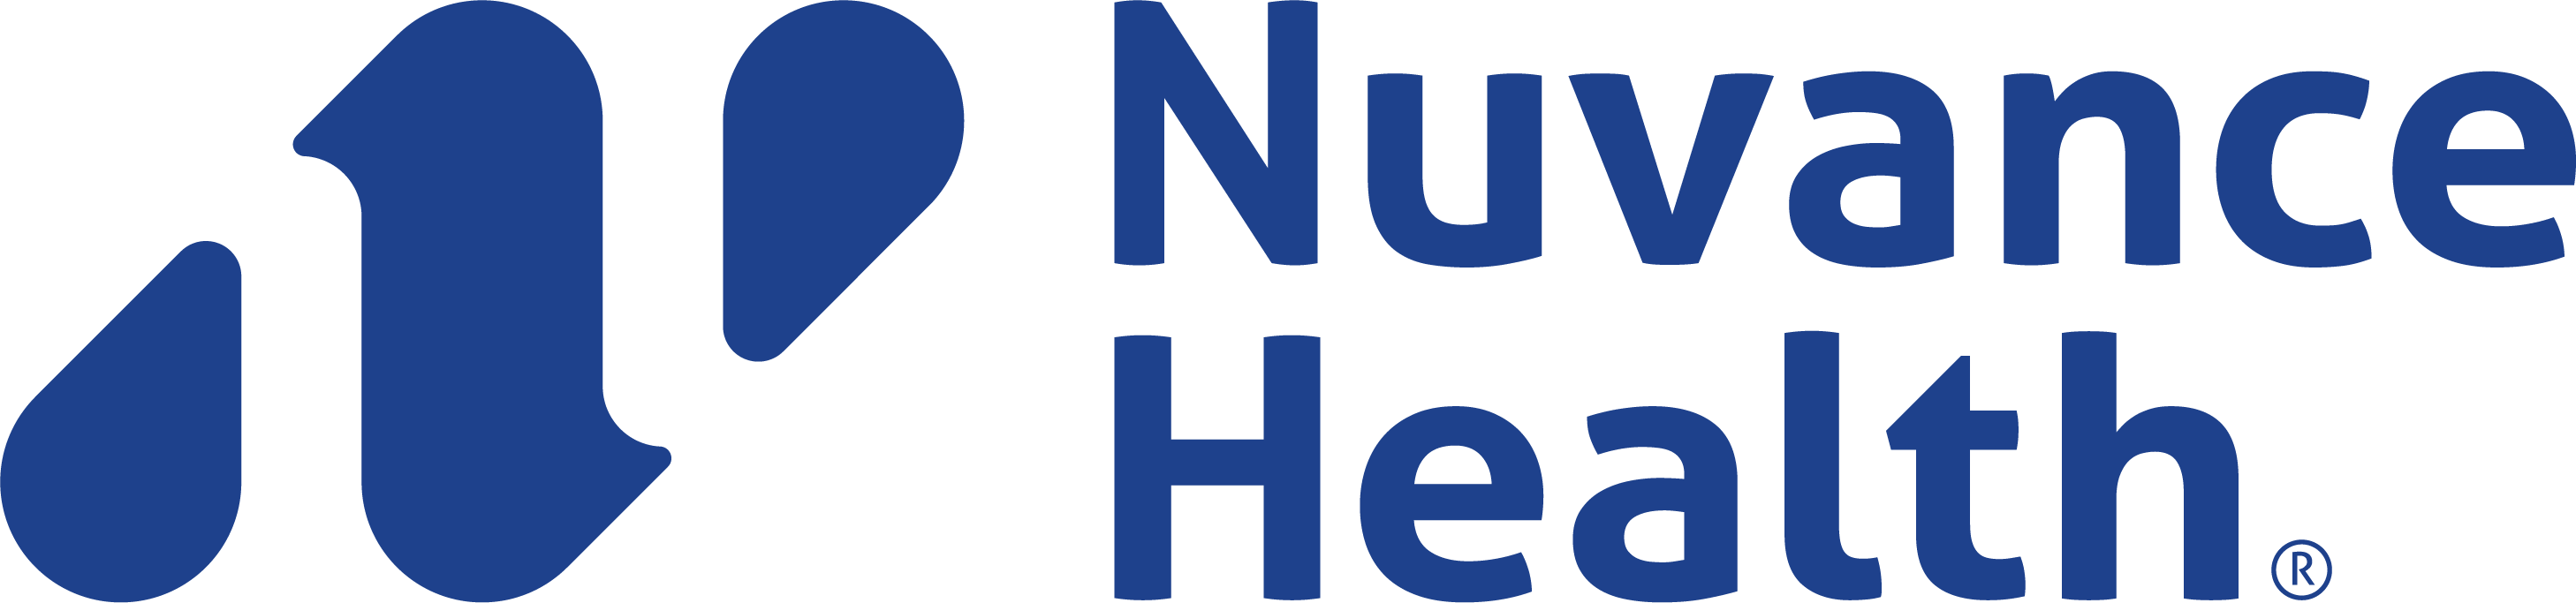 Nuvance Health Registered logo